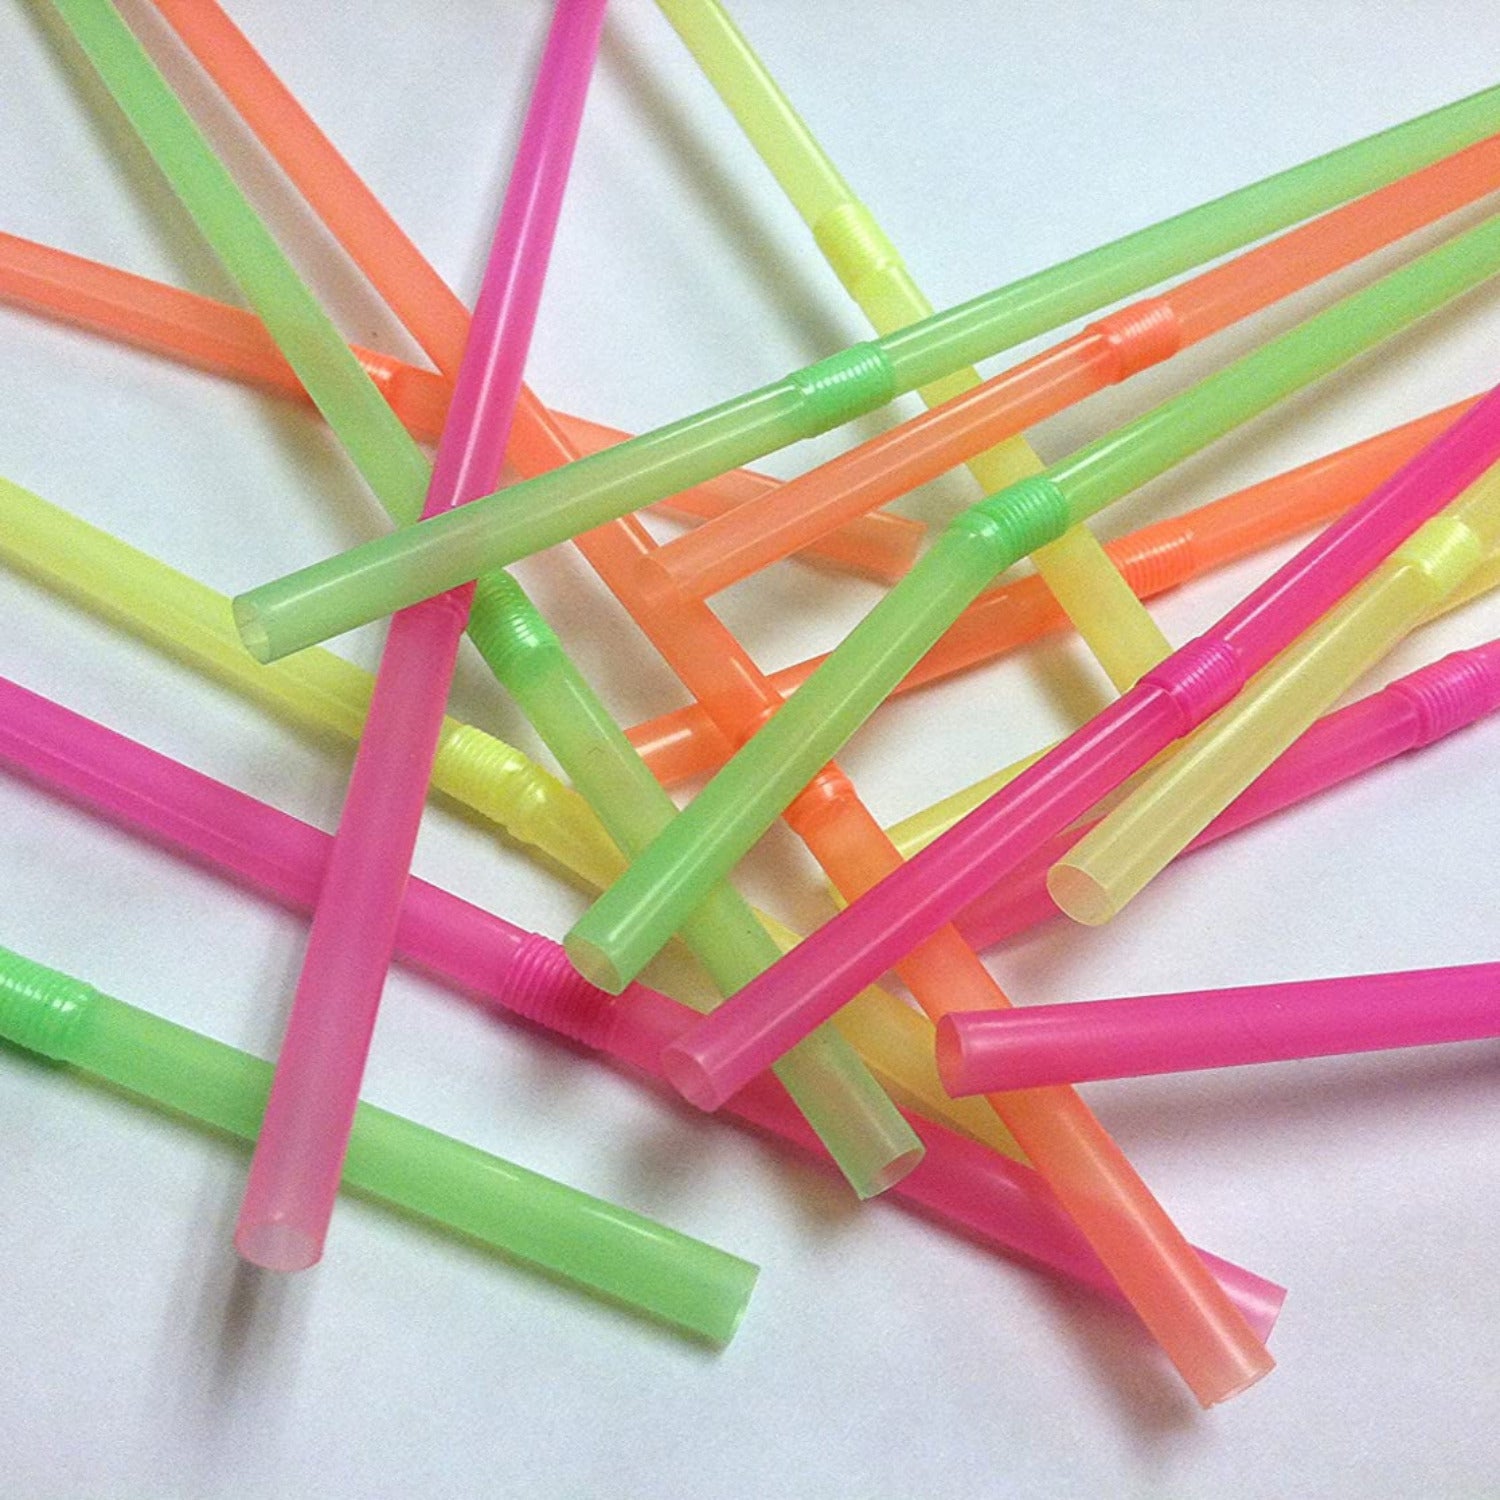 200 9 Supreme Glow Straws